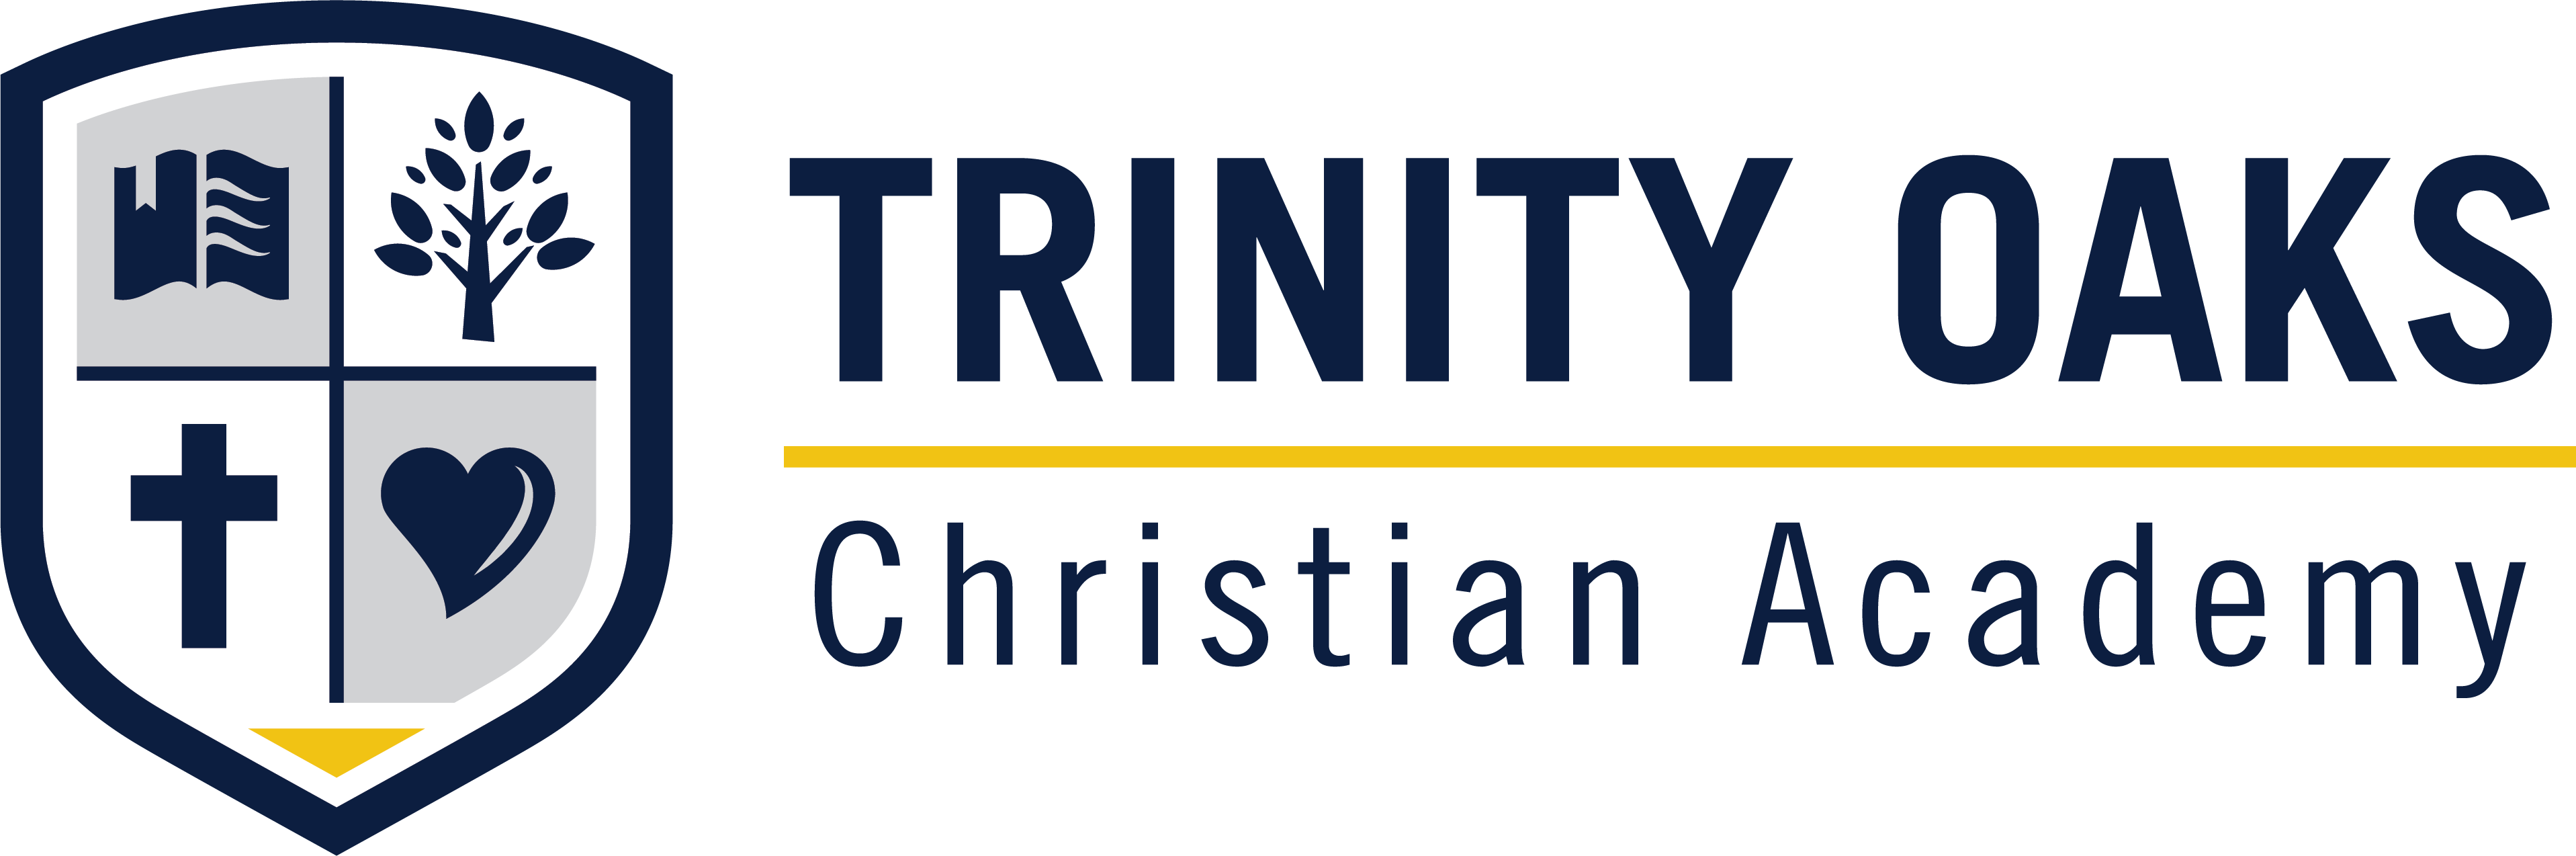 Trinity Oaks Christian Academy